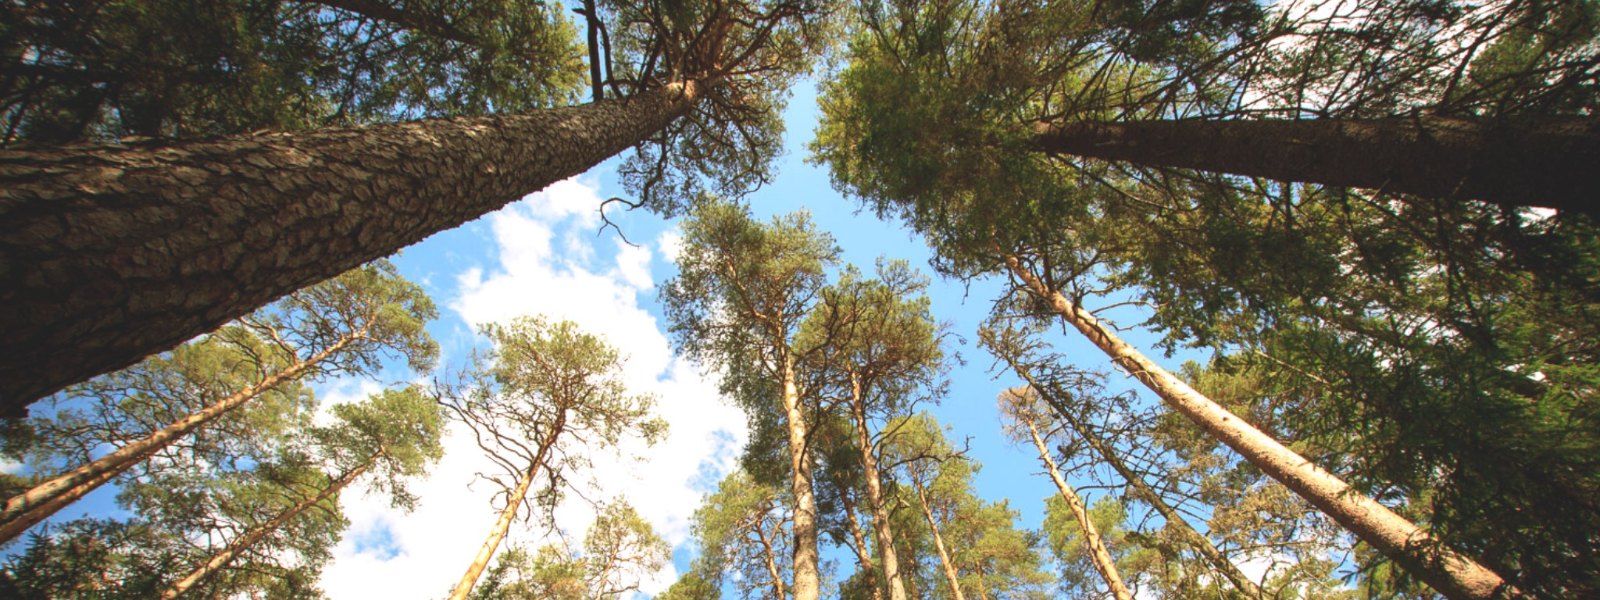 AMBRIESTO OÜ - Tegeleme puude langetamise ja hooldusega, samuti küttepuude müügi ning maastikuhooldusteenustega.